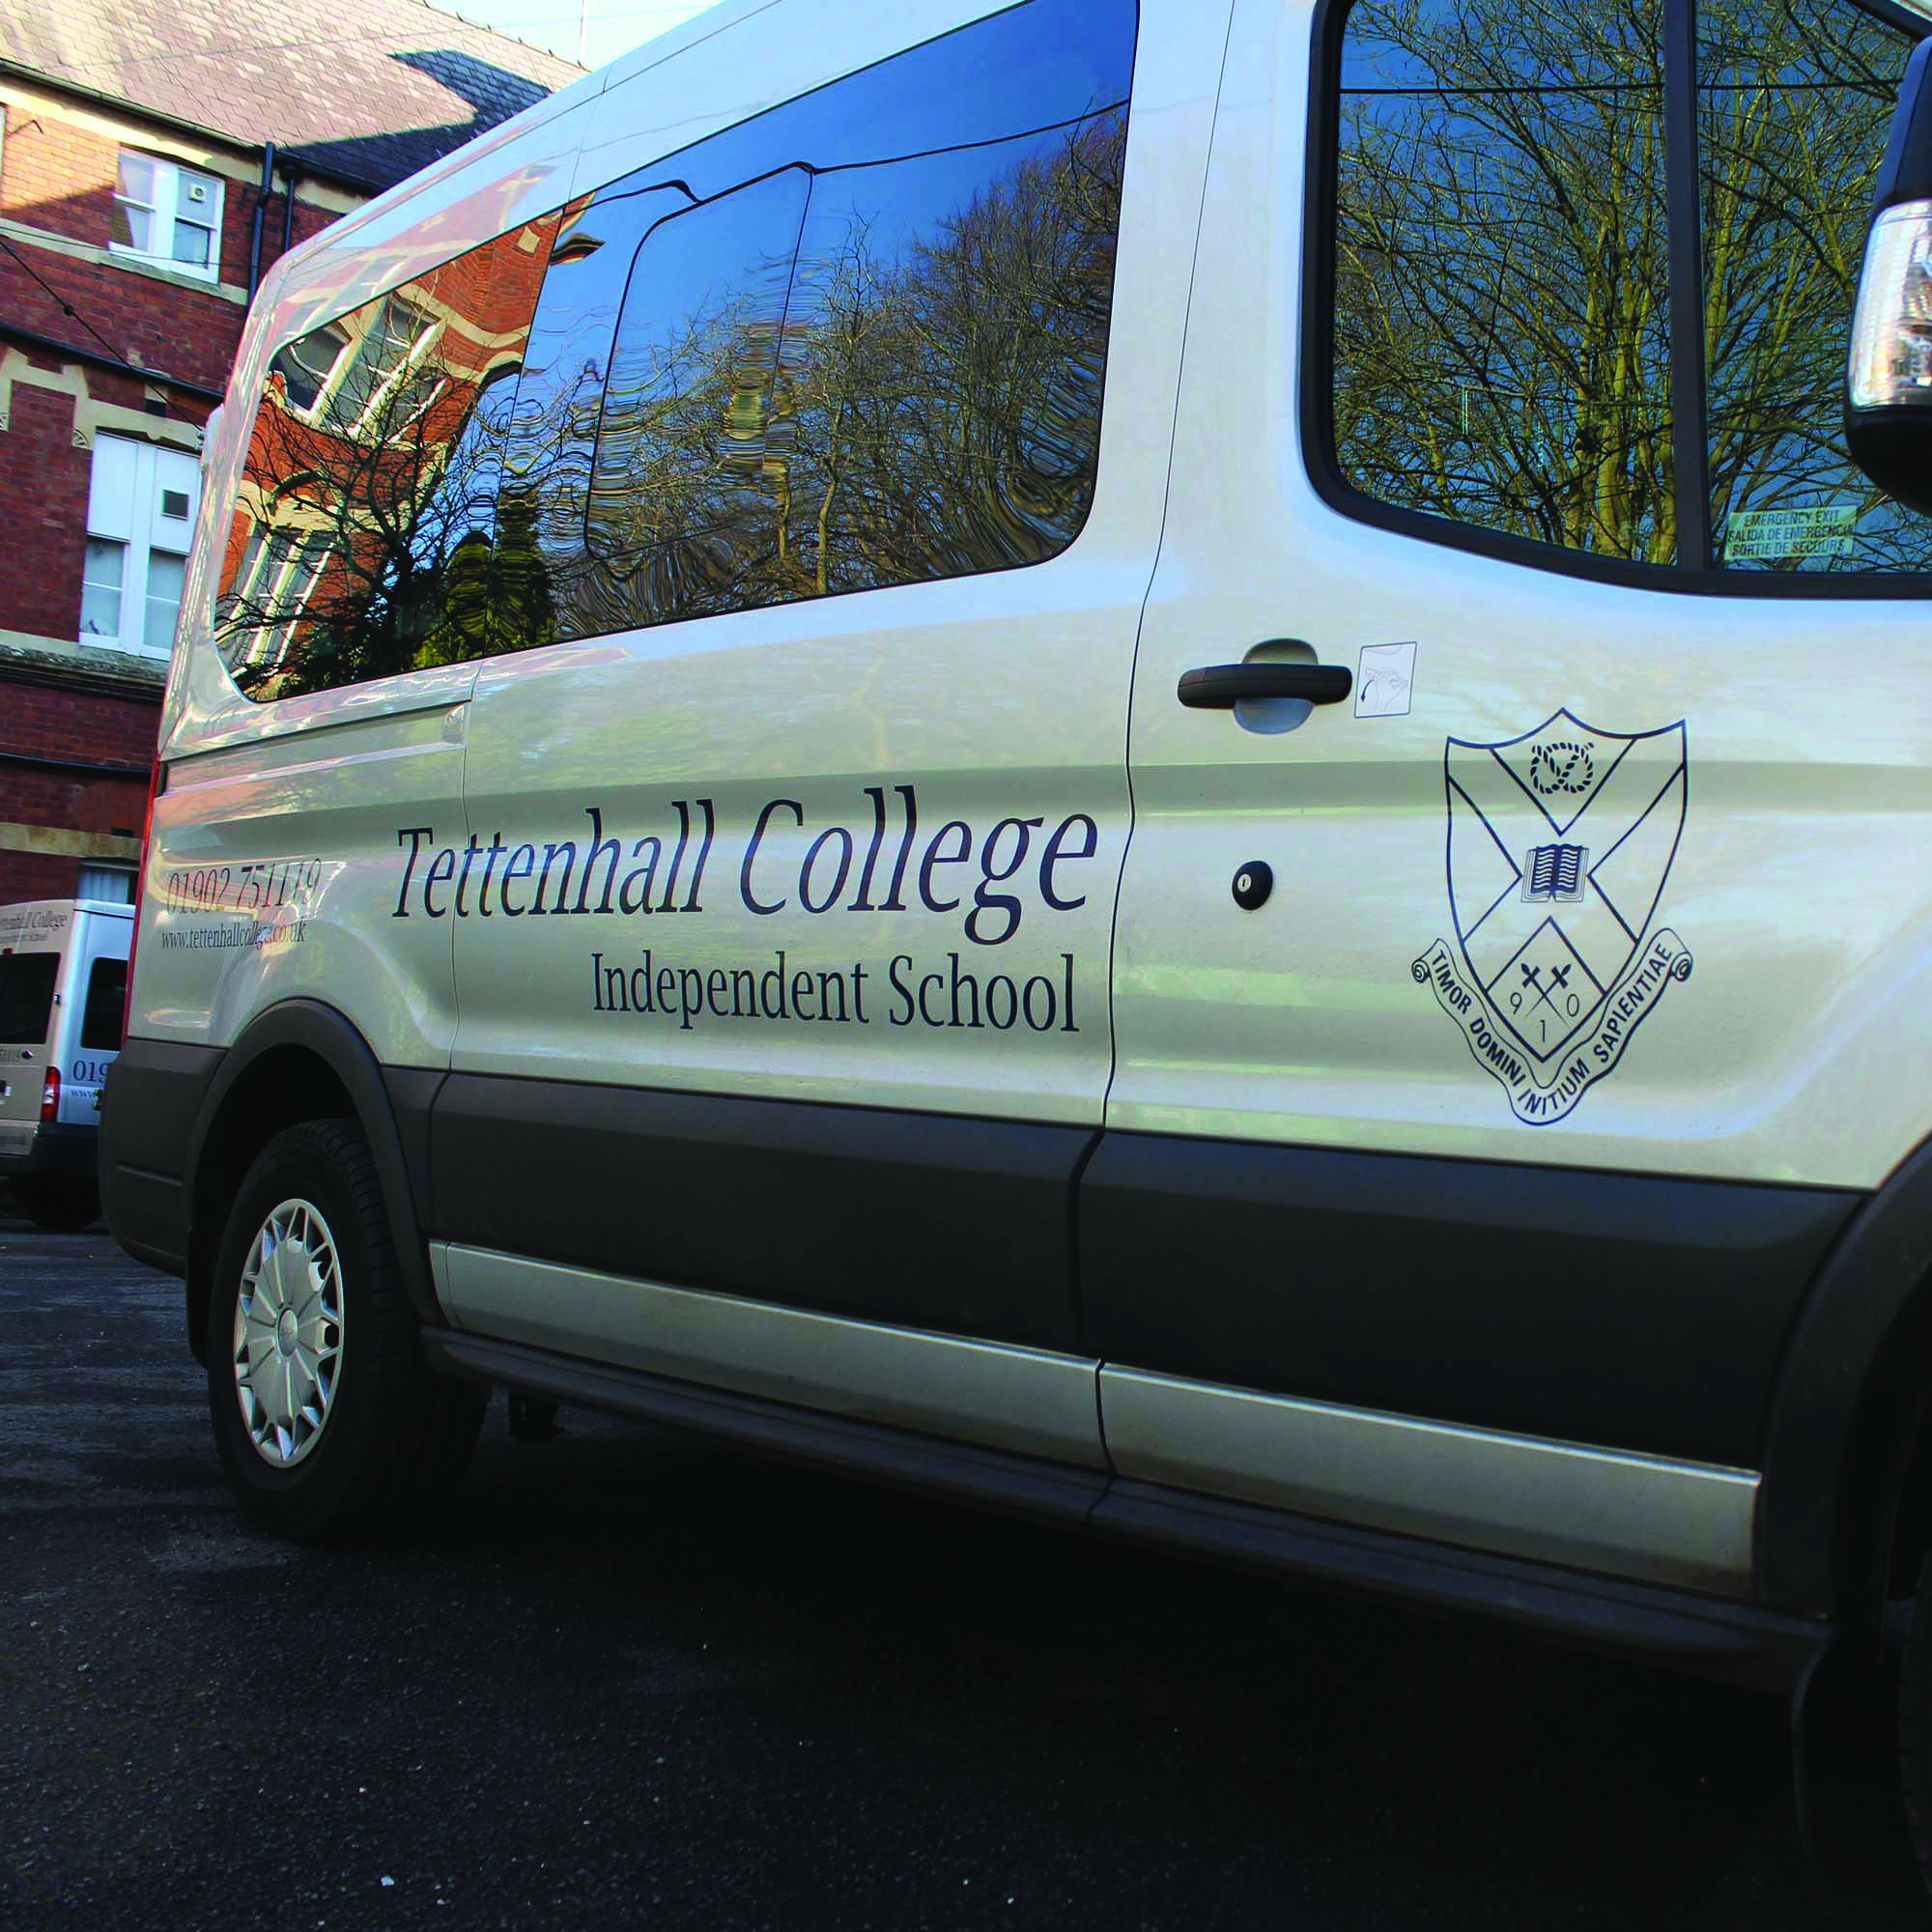 Tettenhall College Van